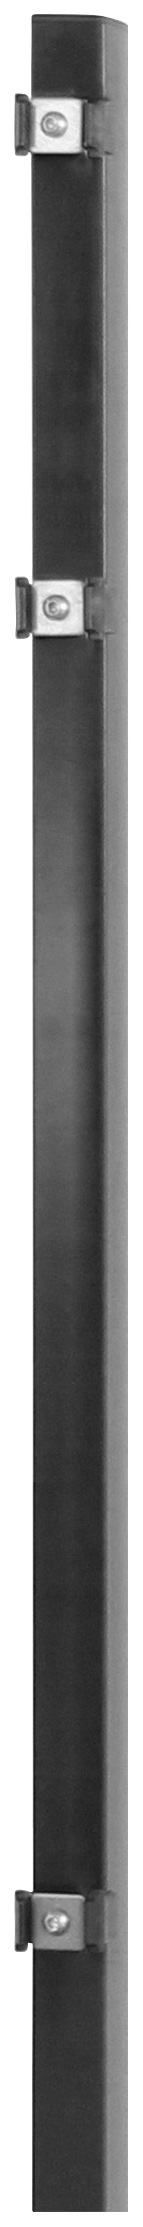 Arvotec Zaunpfosten "ESSENTIAL 80", 4x4x120 cm für Mattenhöhe 80 cm, zum Ei günstig online kaufen